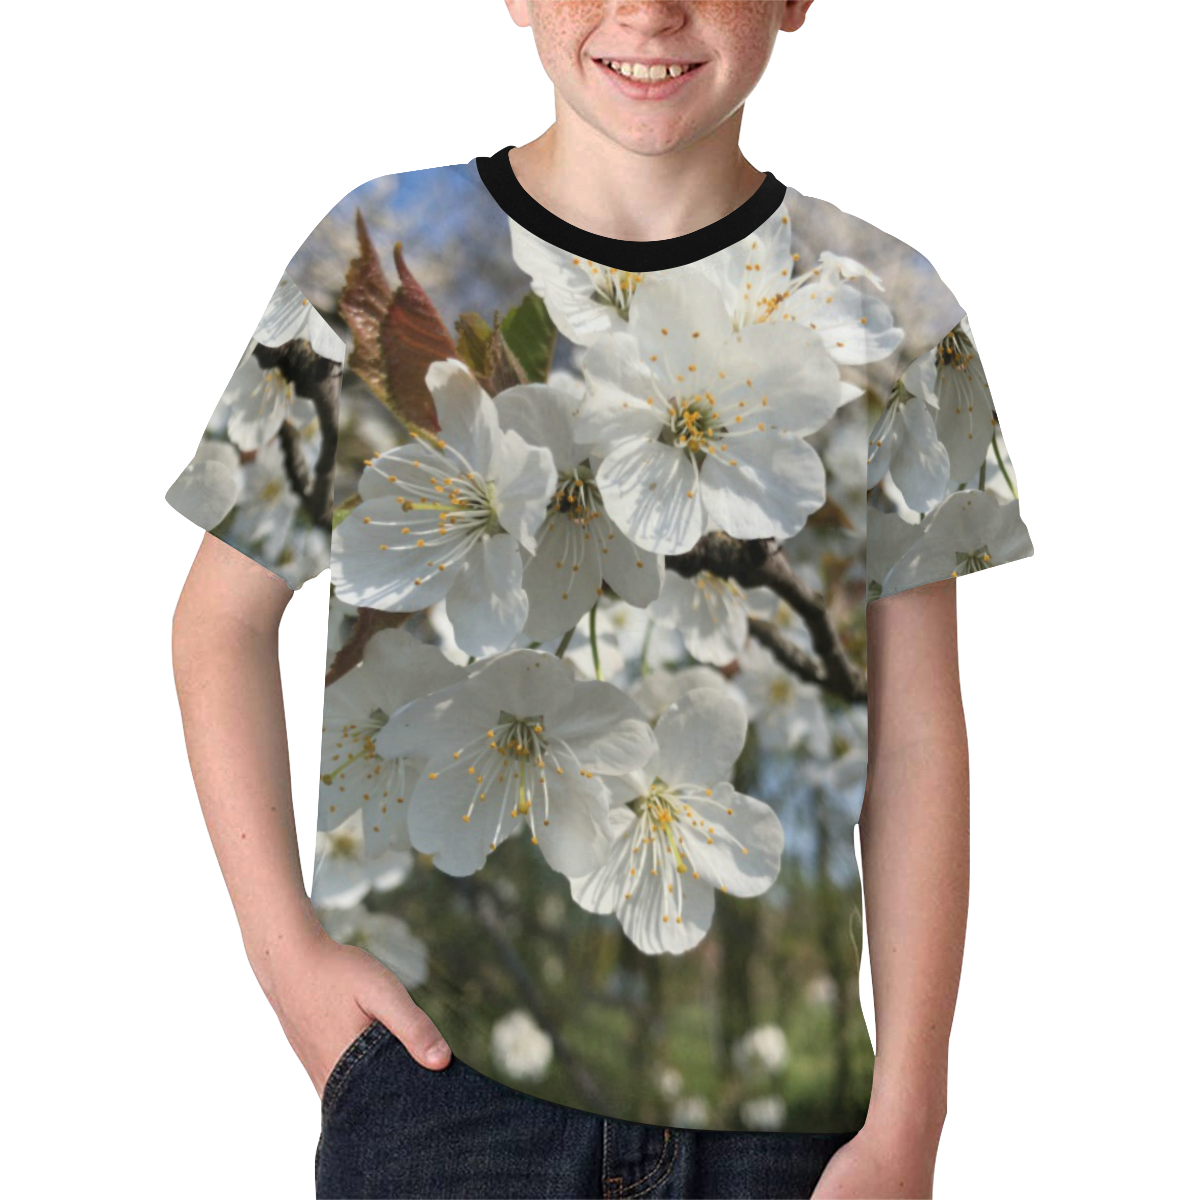 white flower Kids' All Over Print T-shirt (Model T65)